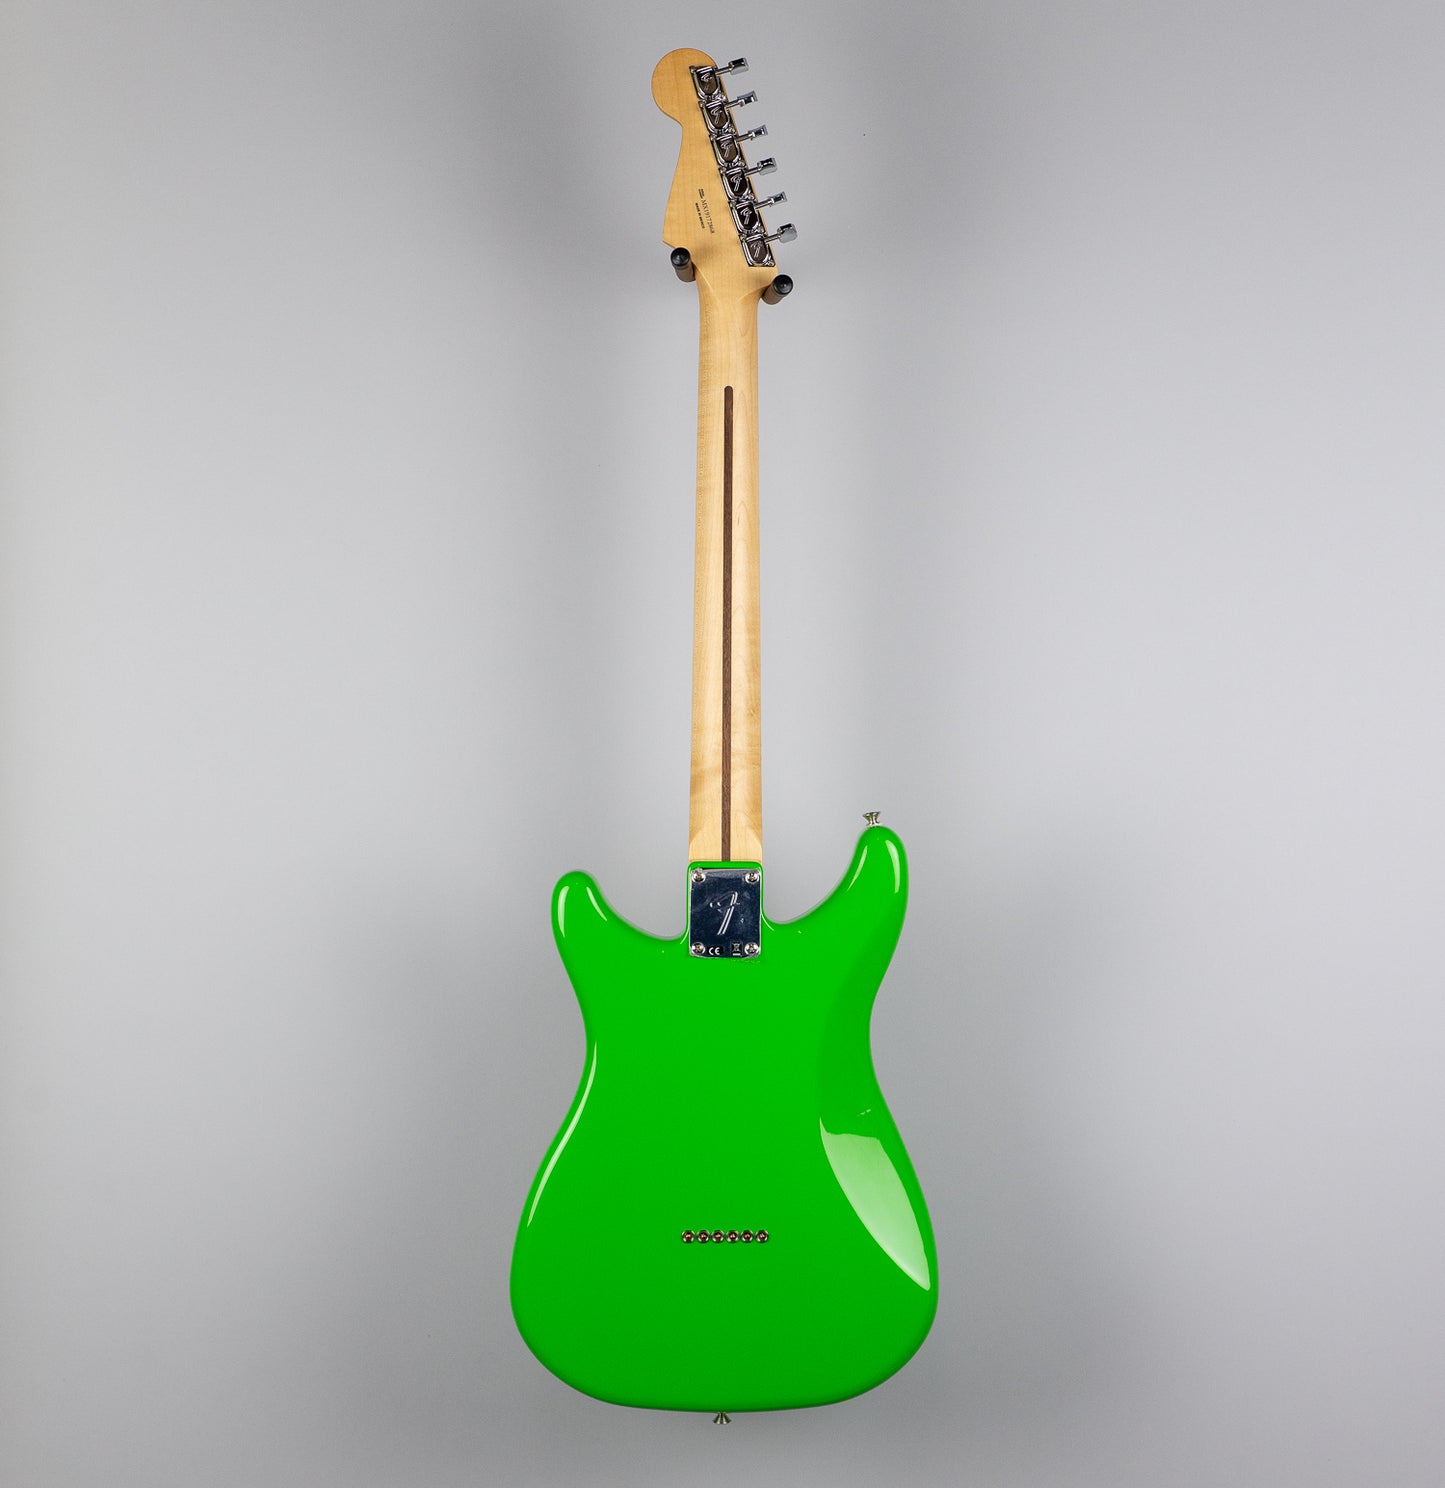 Fender Player Lead II in Neon Green